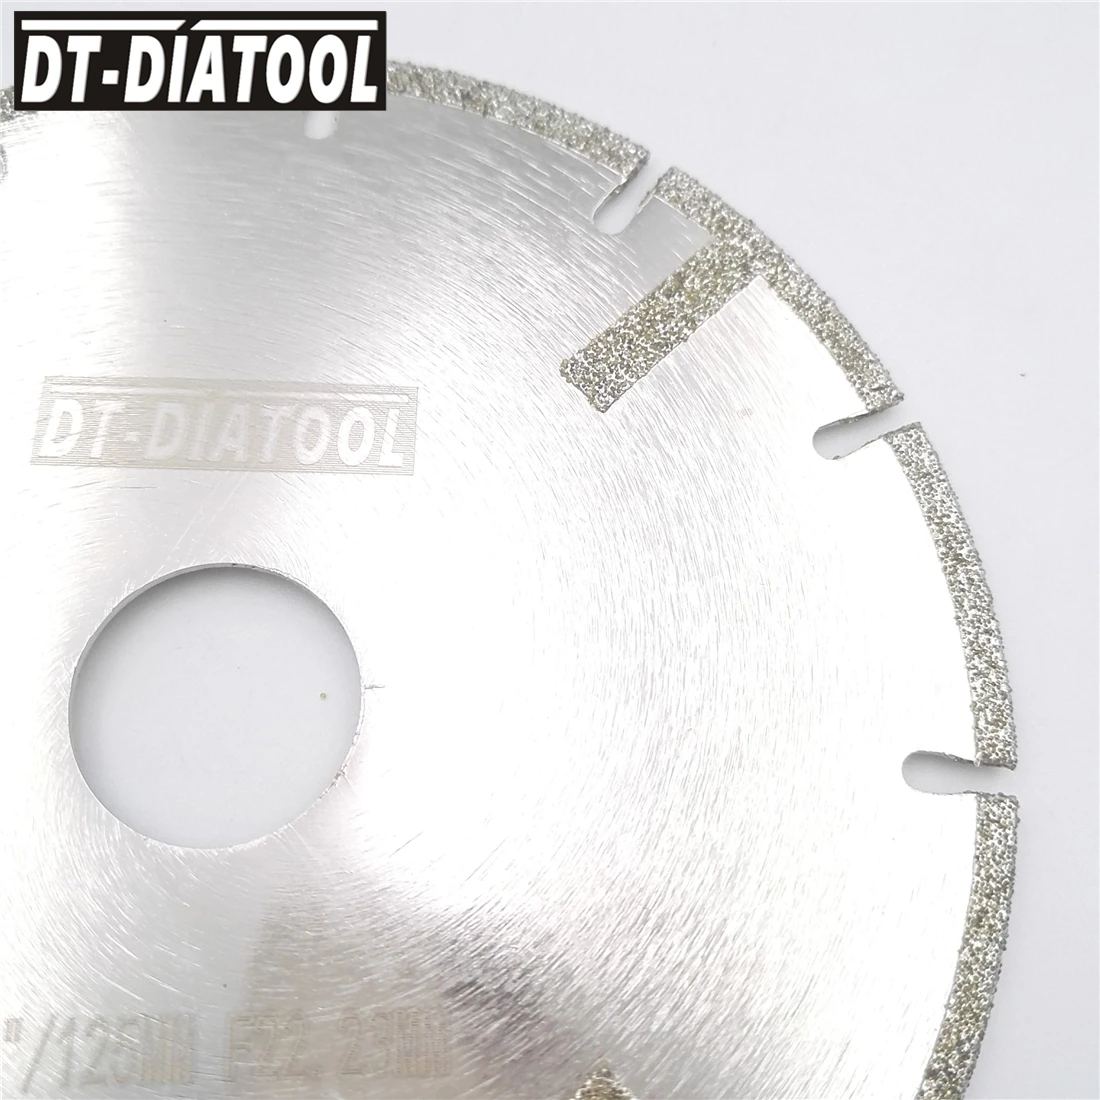 Гальваническое усиленное пильное полотно, DT-DIATOOL, 2 шт., 5 дюймов, алмазный отрезной диск, диаметр 22,23 мм, 125 мм, для камня, плитки, мрамора от AliExpress WW